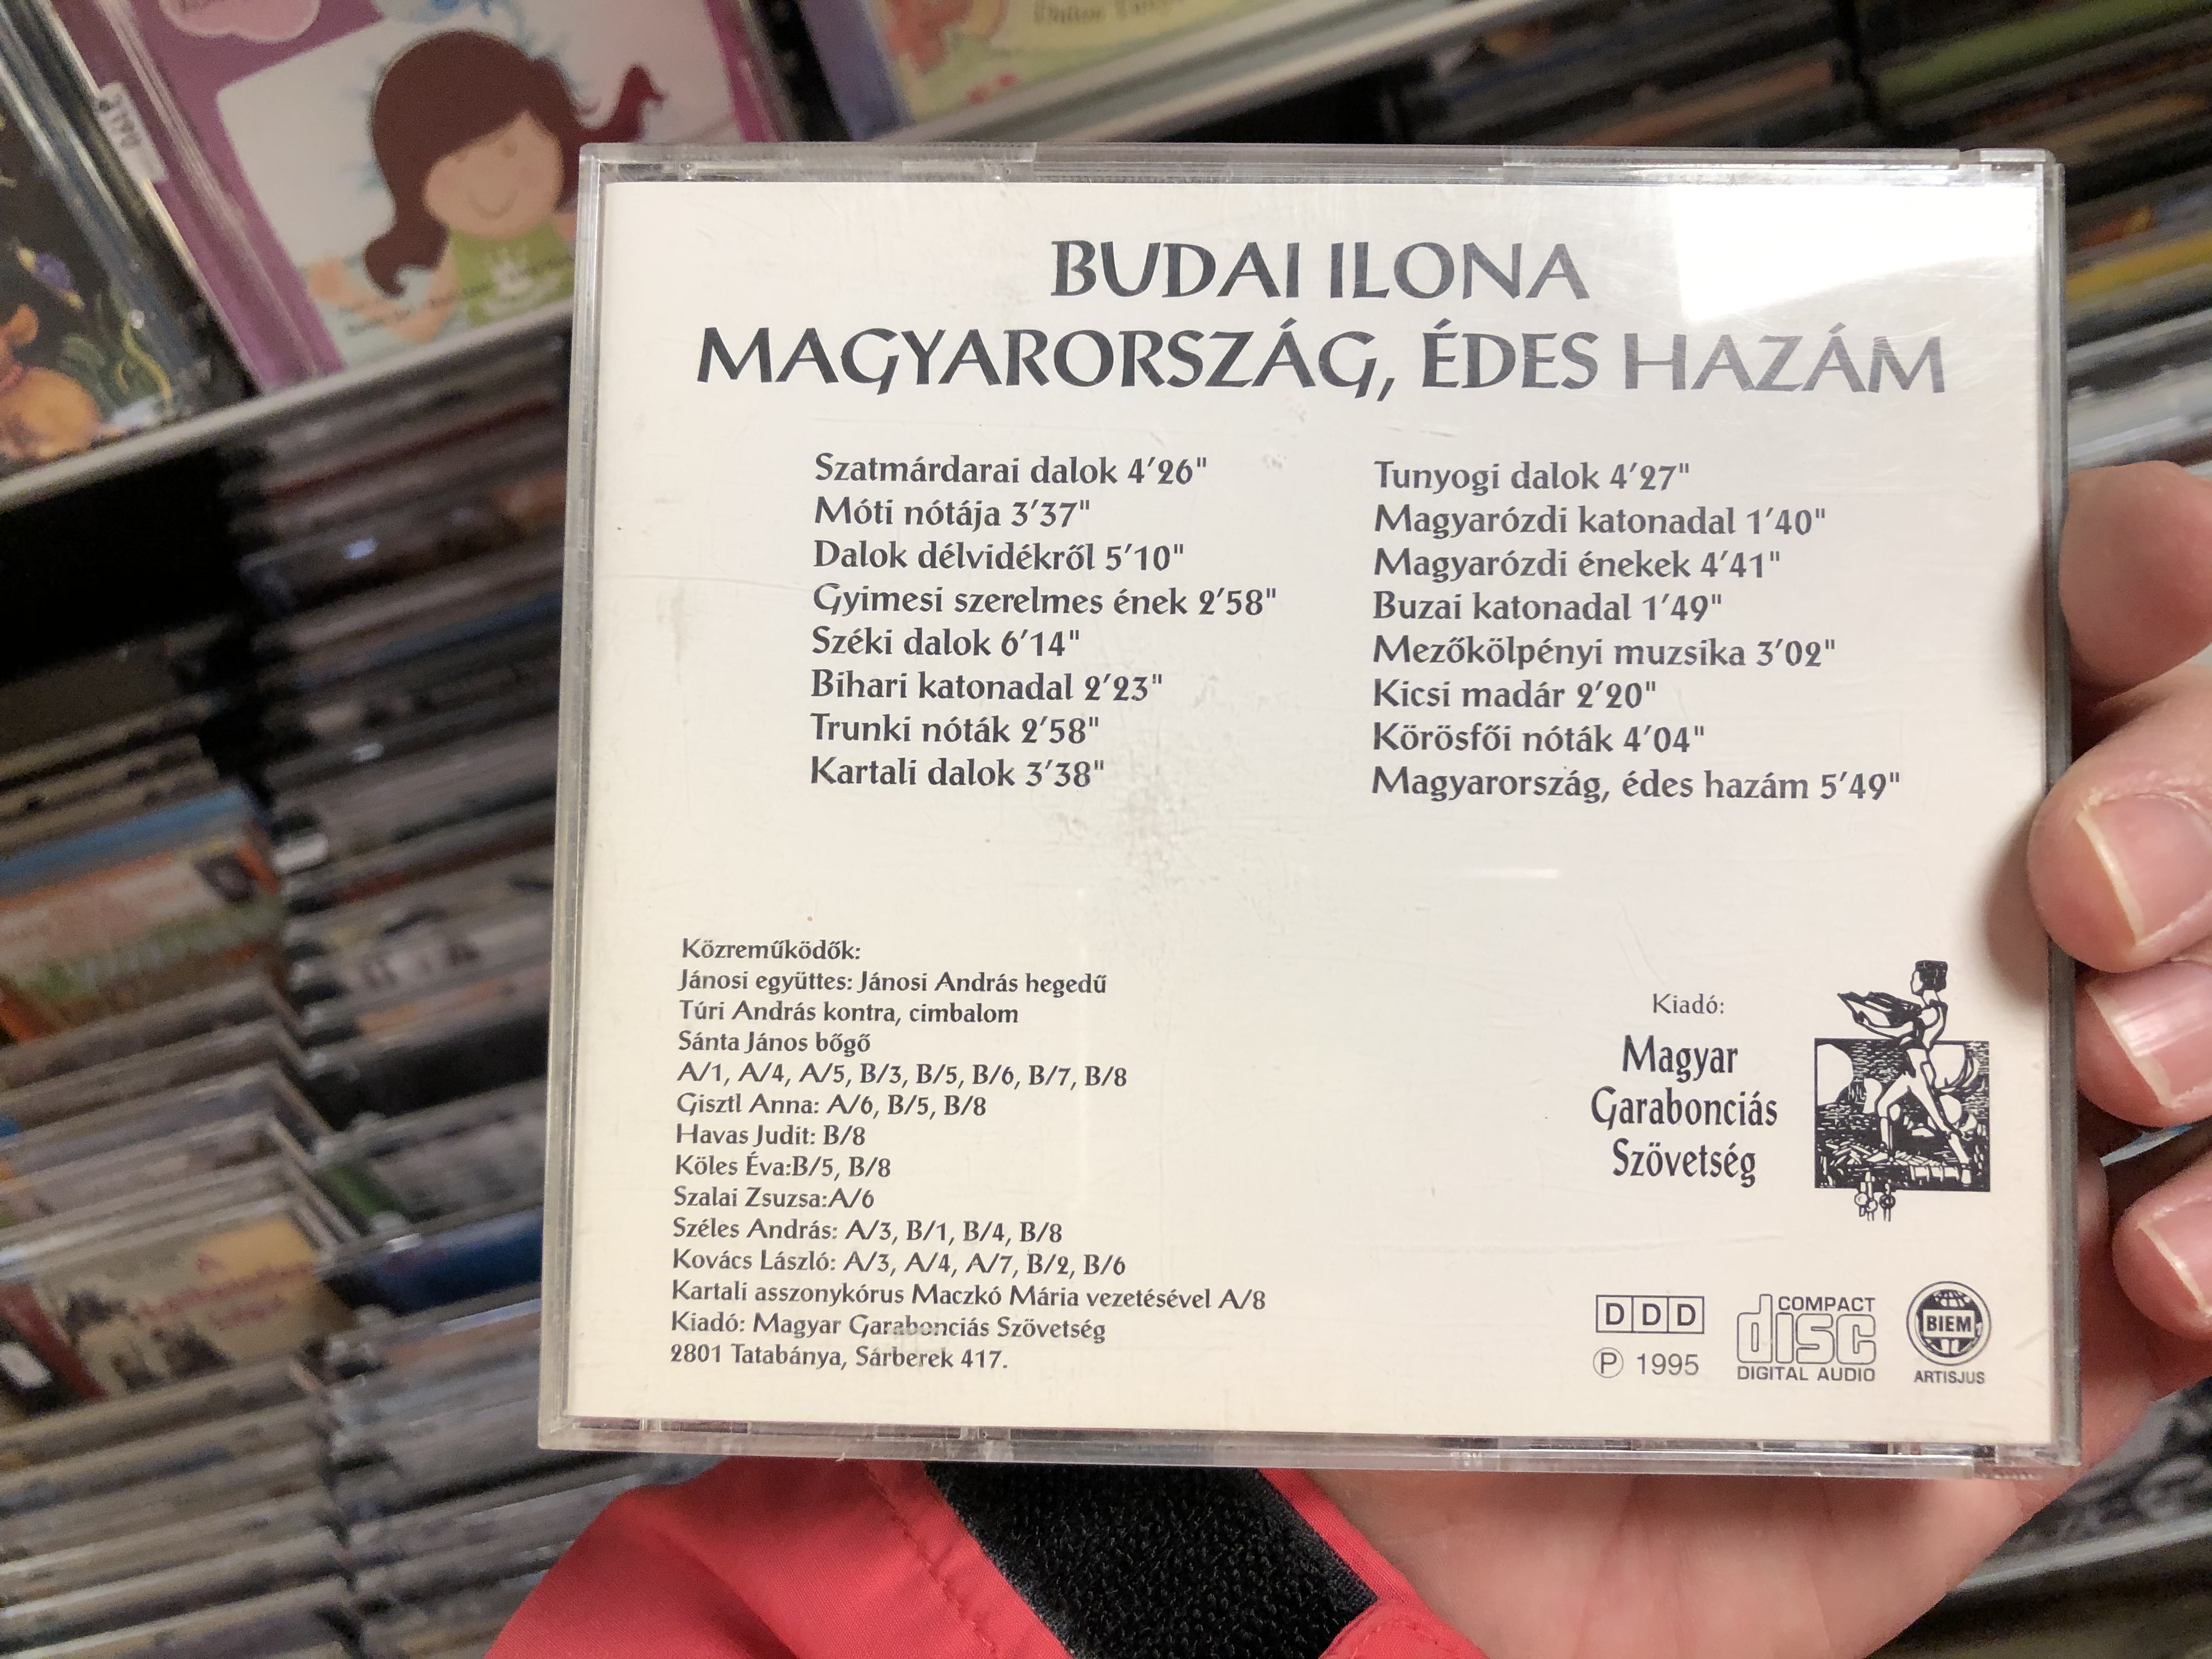 magyarorsz-g-des-haz-m-budai-ilona-magyar-garabonci-s-sz-vets-g-audio-cd-1995-2-.jpg